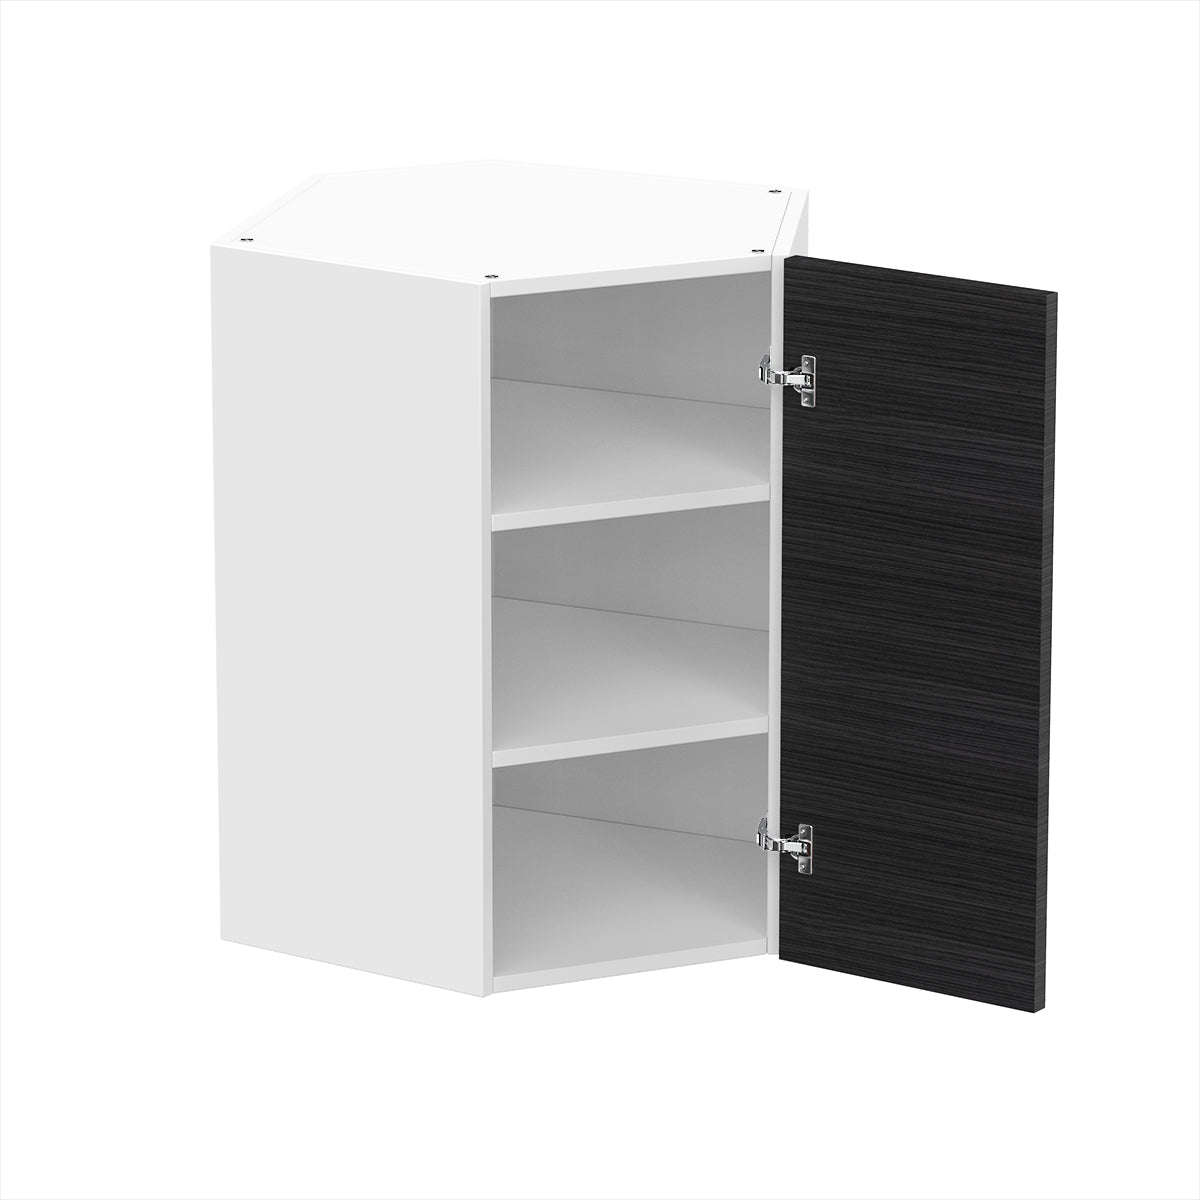 RTA - Dark Wood - Diagonal Wall Cabinets | 24"W x 30"H x 12"D